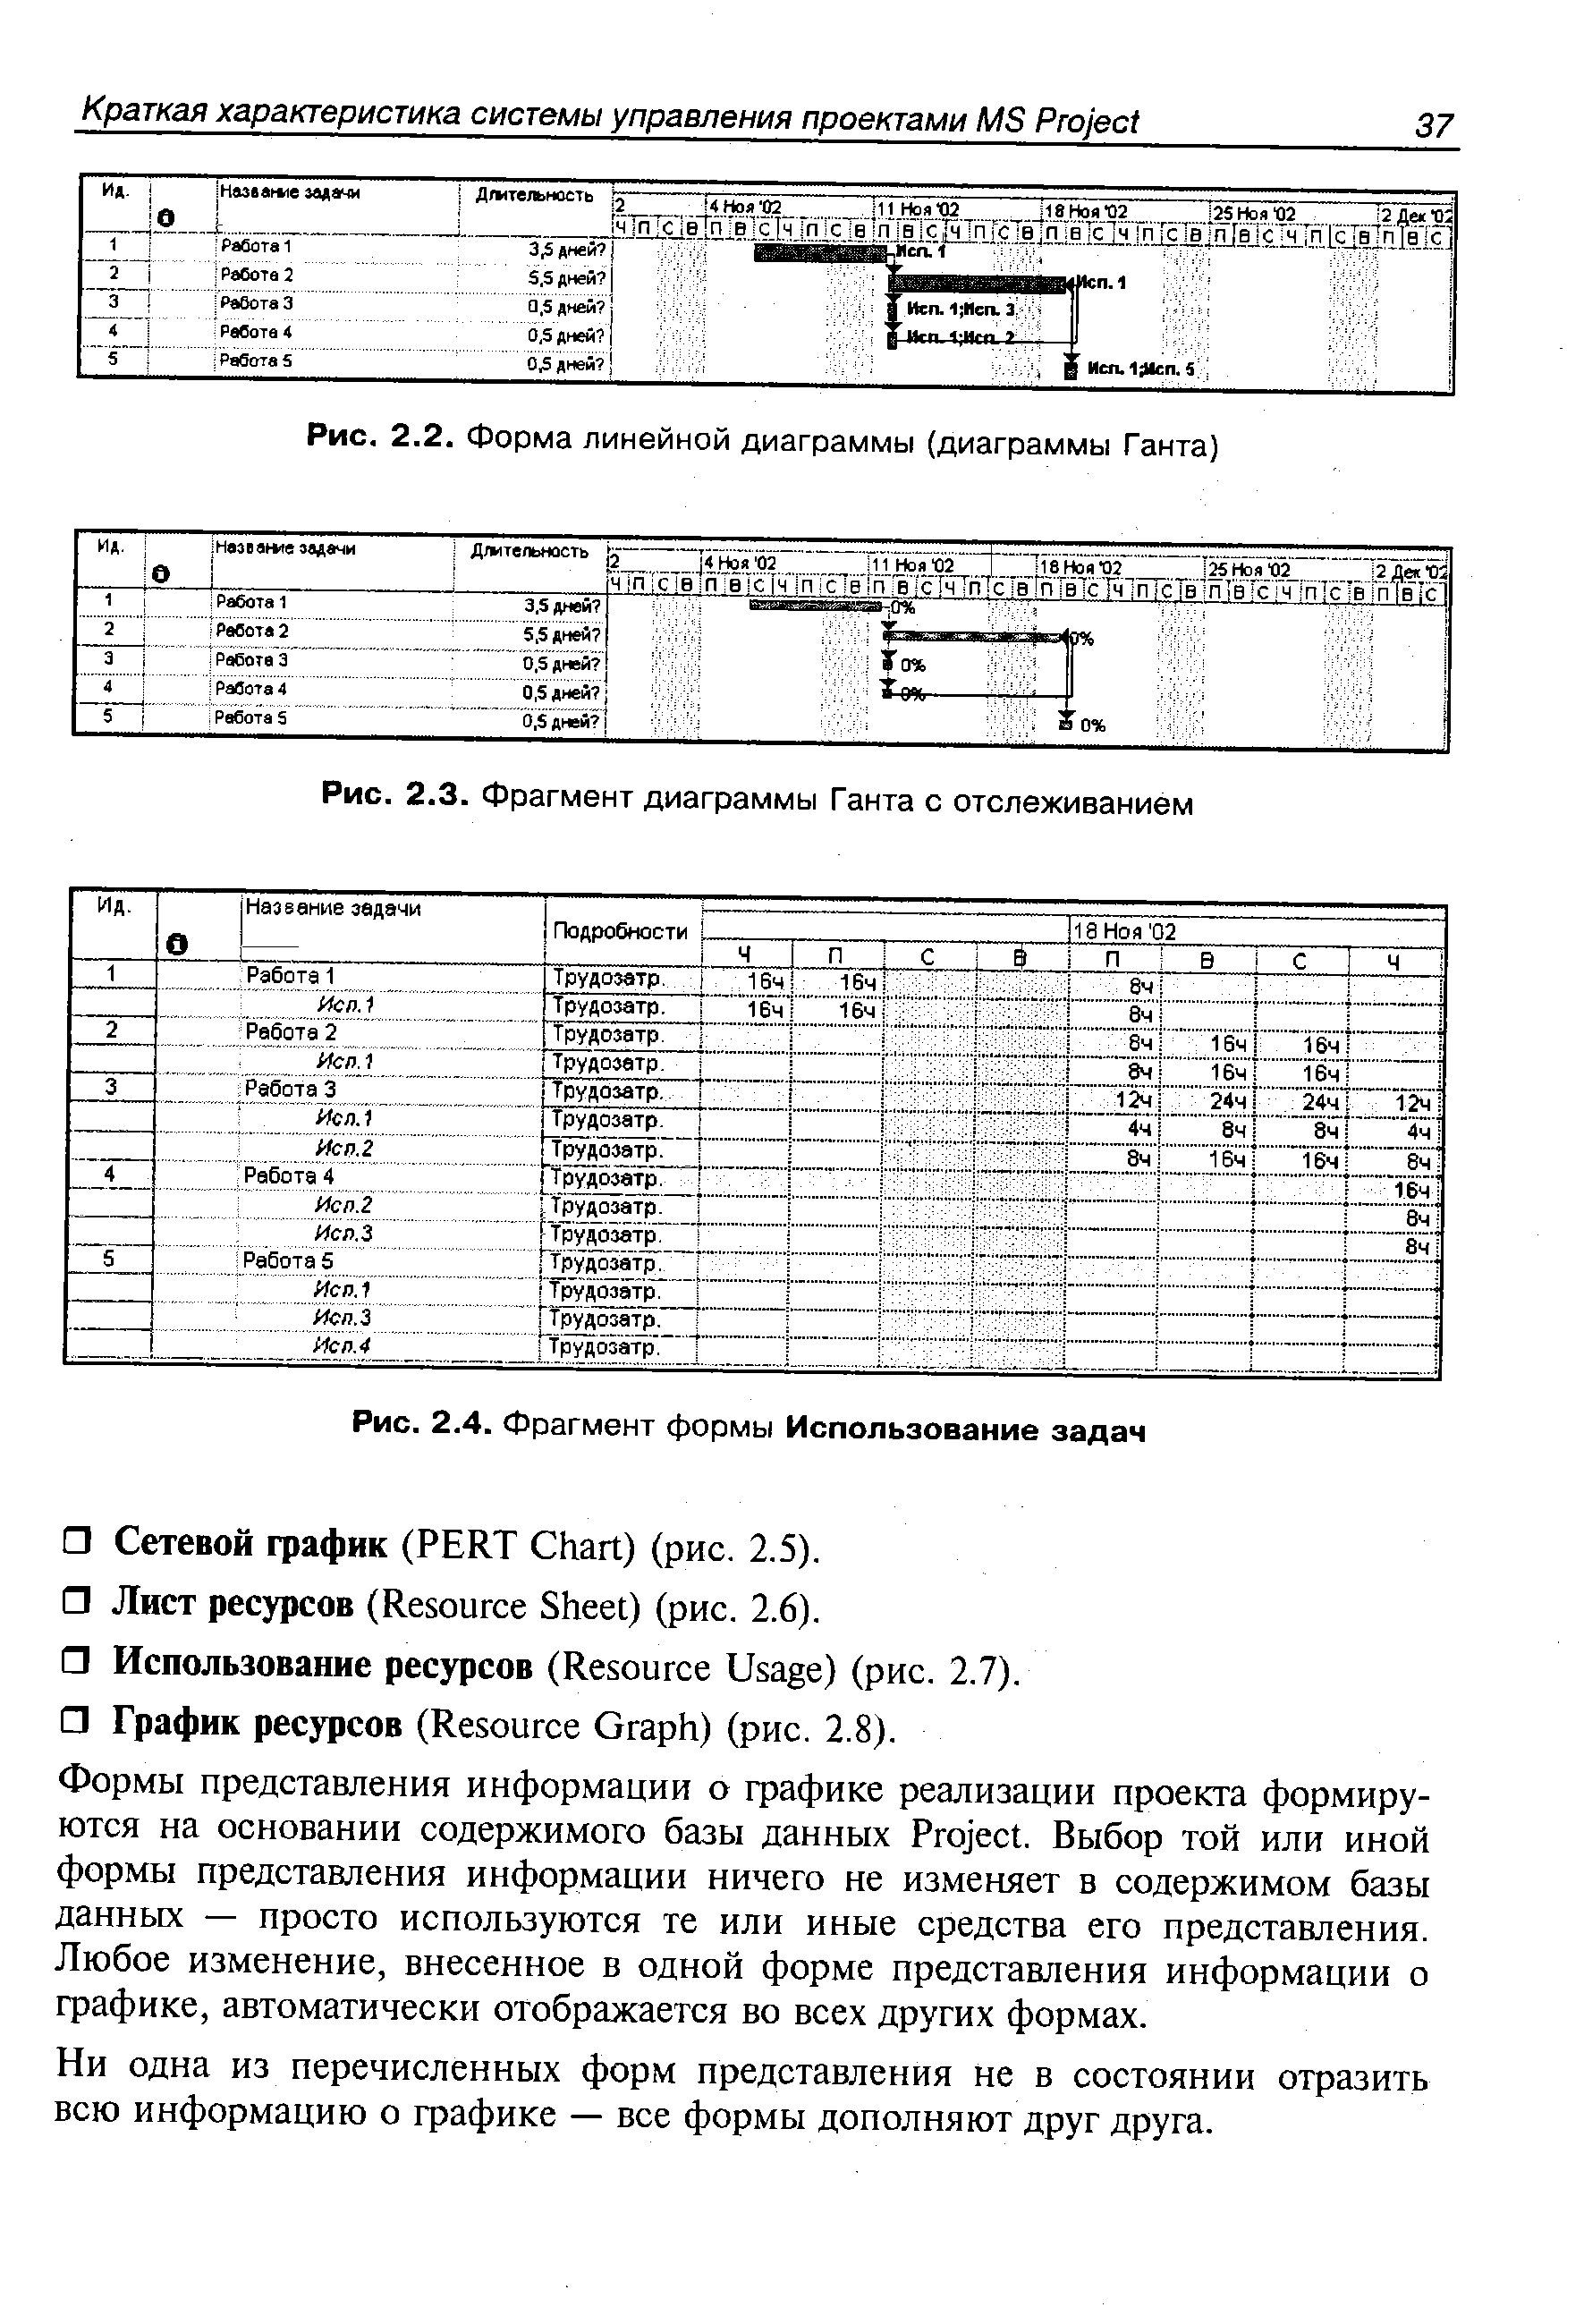 Рис. 2.3. Фрагмент диаграммы Ганта с отслеживанием
